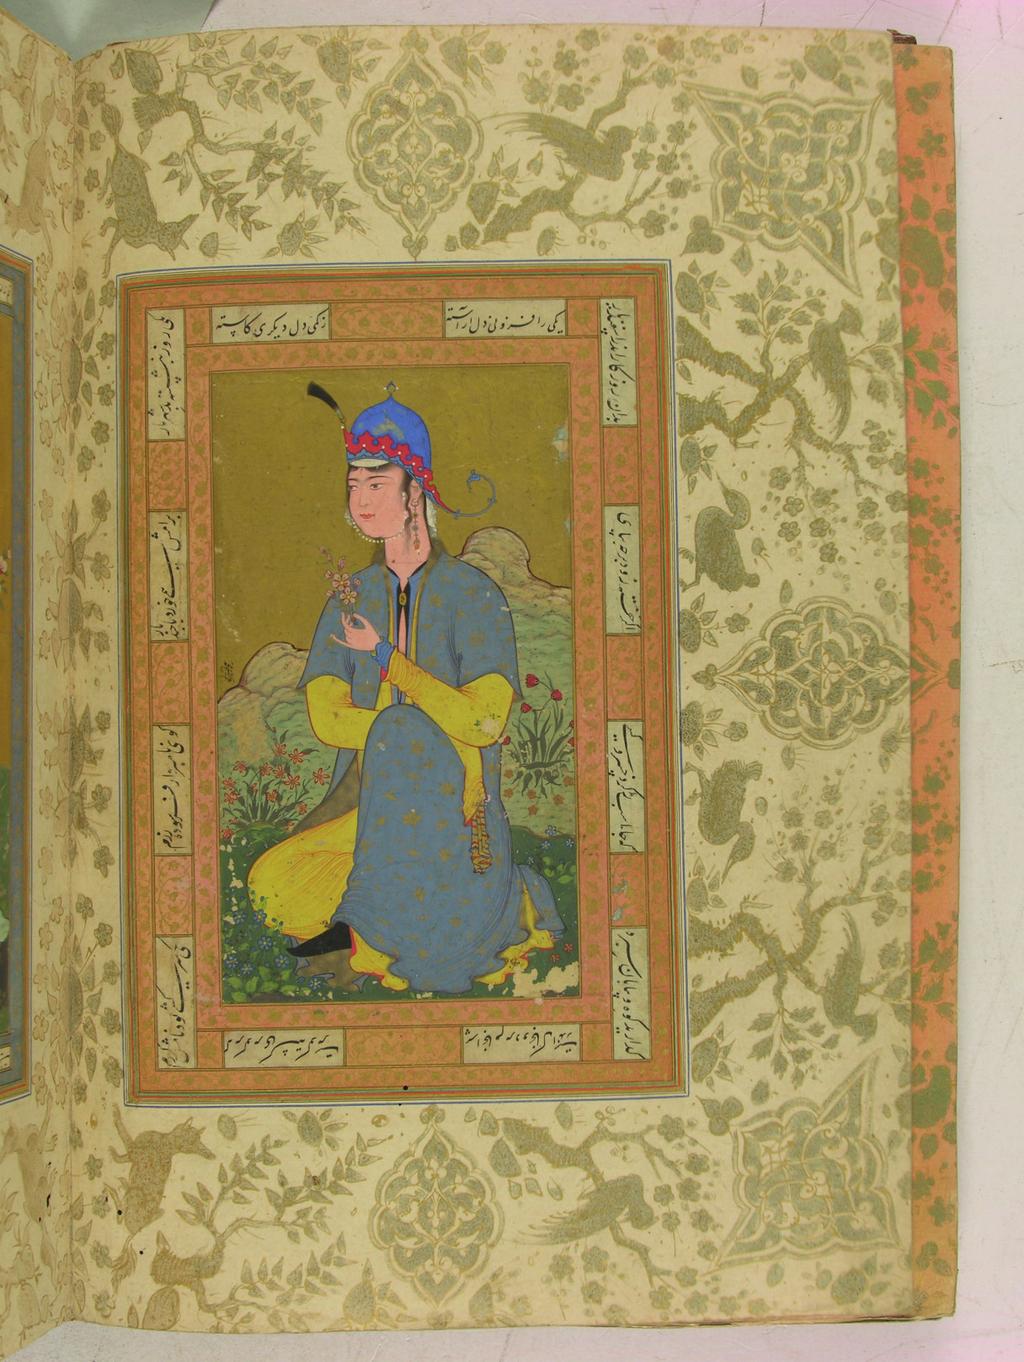 Topkapı Sarayı Kitap Hazinesi nin Nadide Eserlerinden Bir Diğeri: Hazine 2166 Numaralı Safevî Albümü Hakkında 233 F. 16. Şeyh Muhammed imzalı kadın portresi.